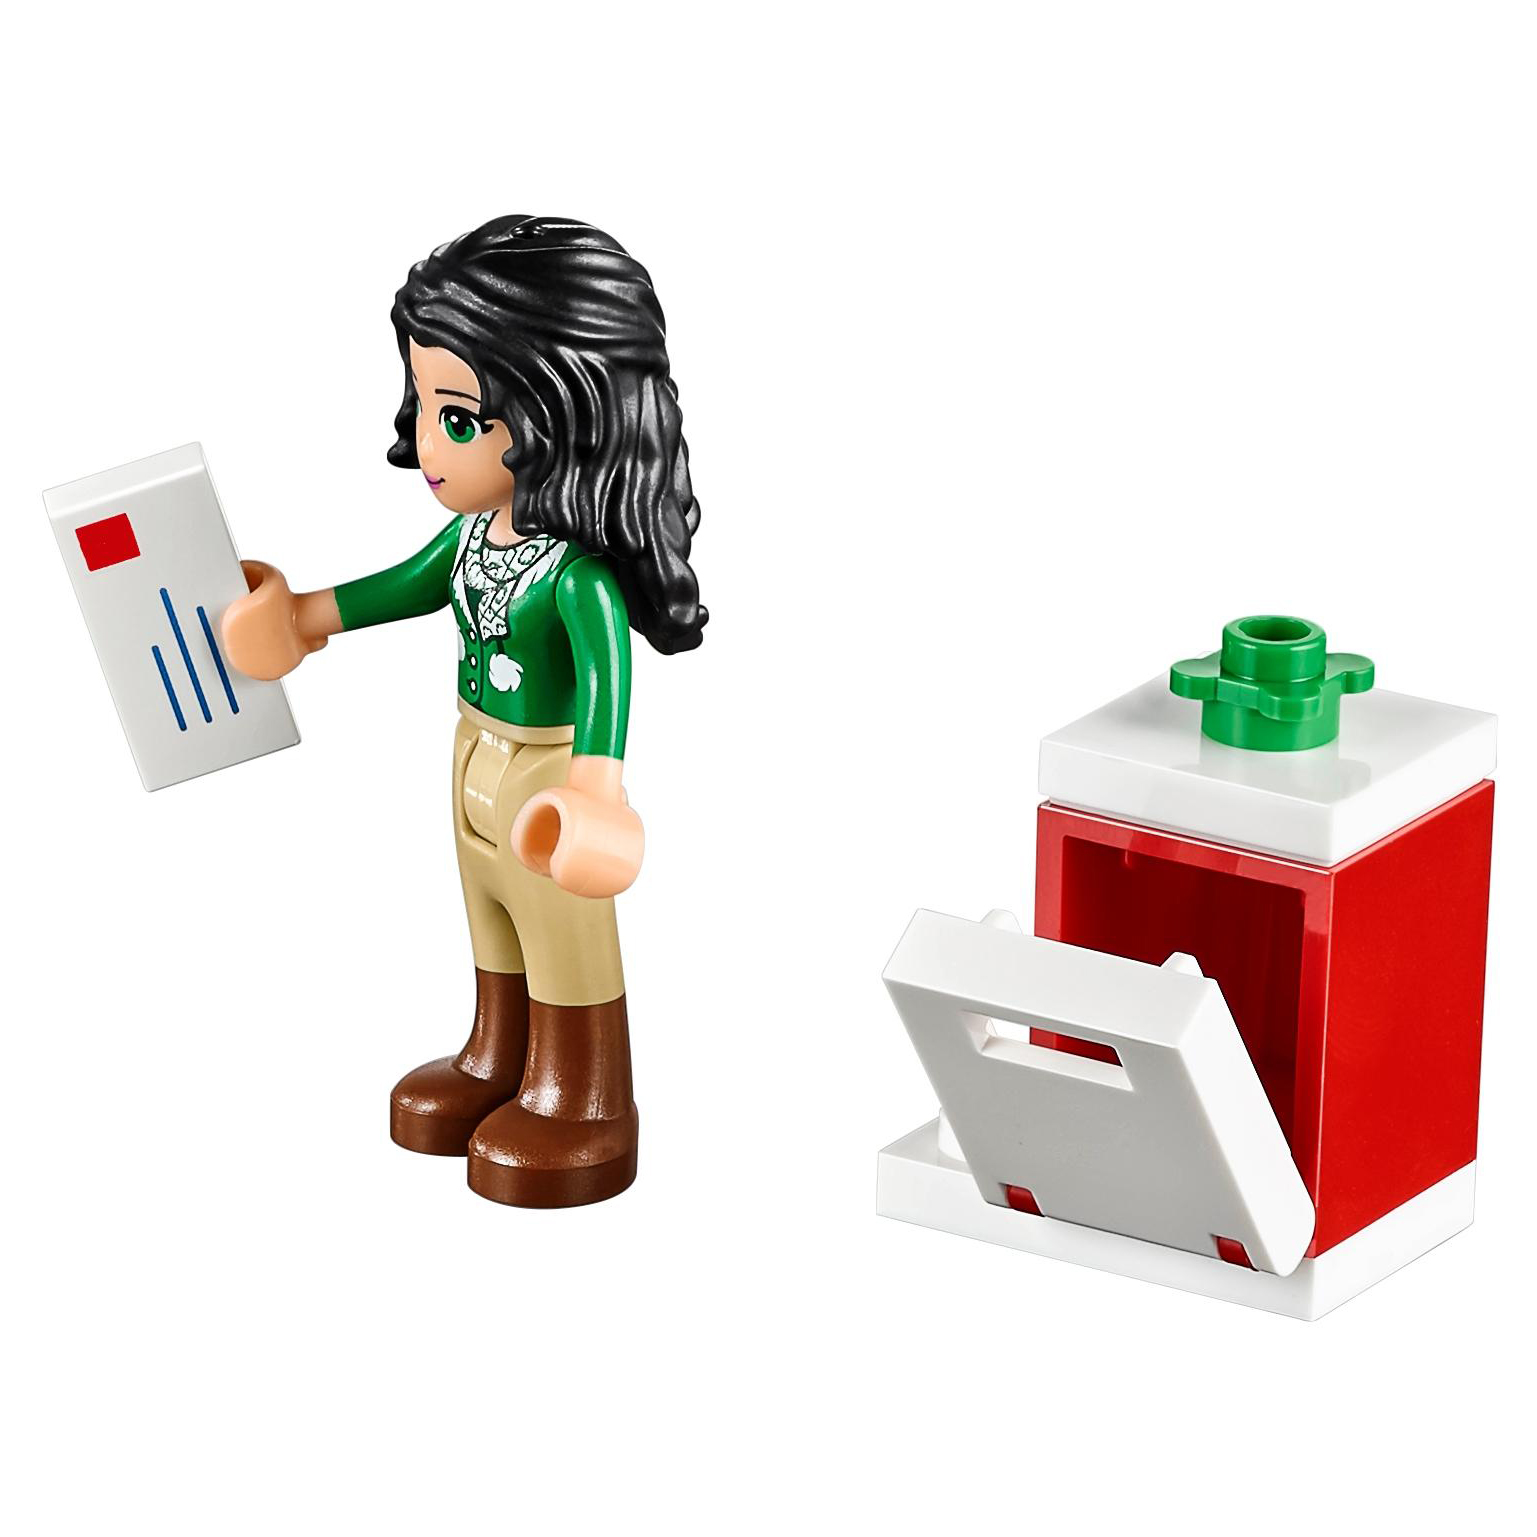 Конструктор LEGO Friends Новогодний календарь (41131) большой новогодний подарок для детей от года до пяти